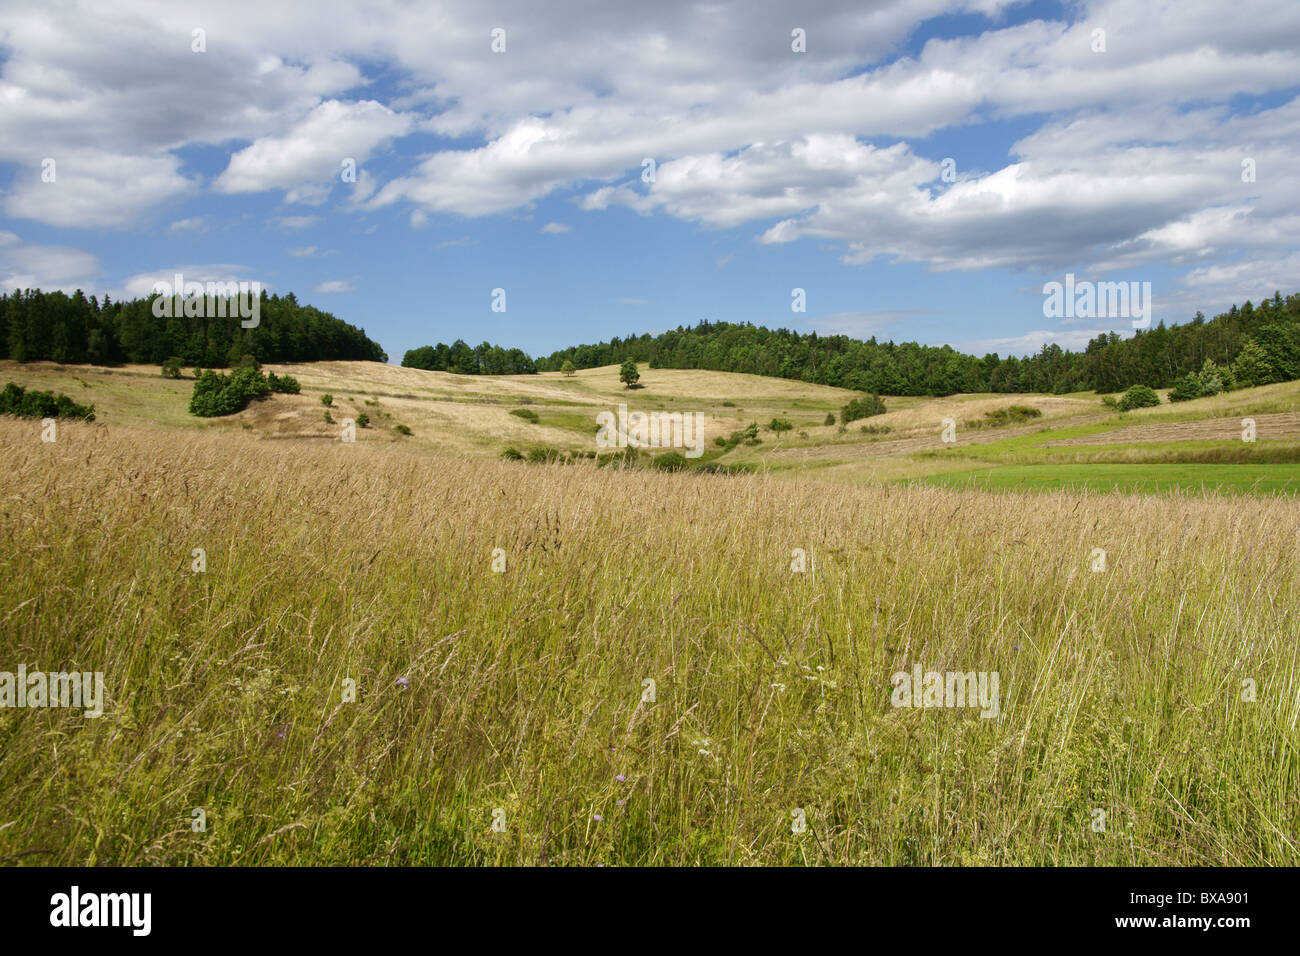 Polnische Landschaft - gelb eingereicht, den blauen Himmel und weiße Wolken Stockfoto